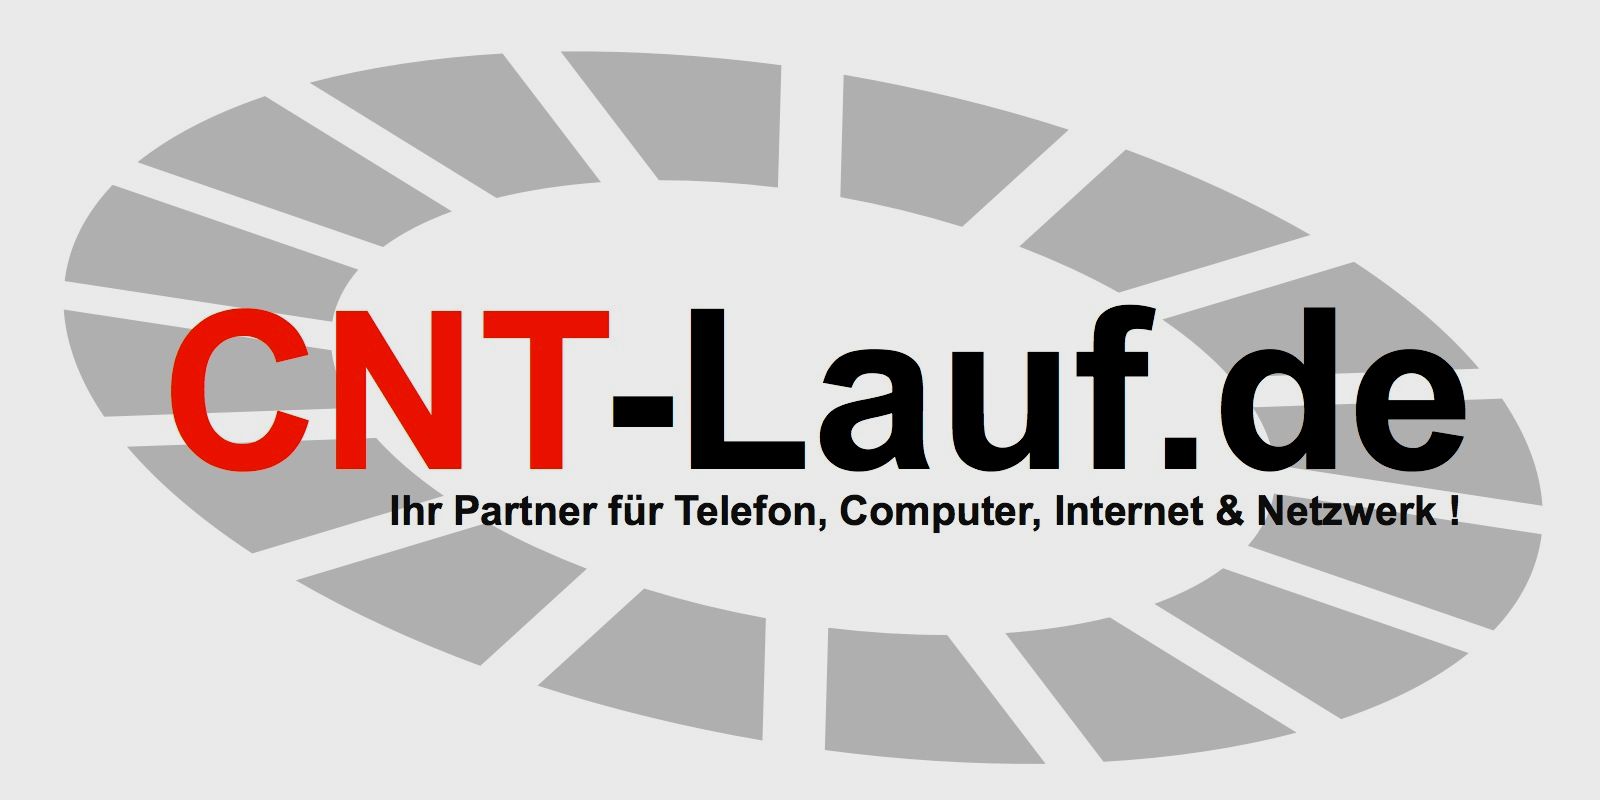 CNT-Lauf.de; Inhaber: Wolfgang Strobl